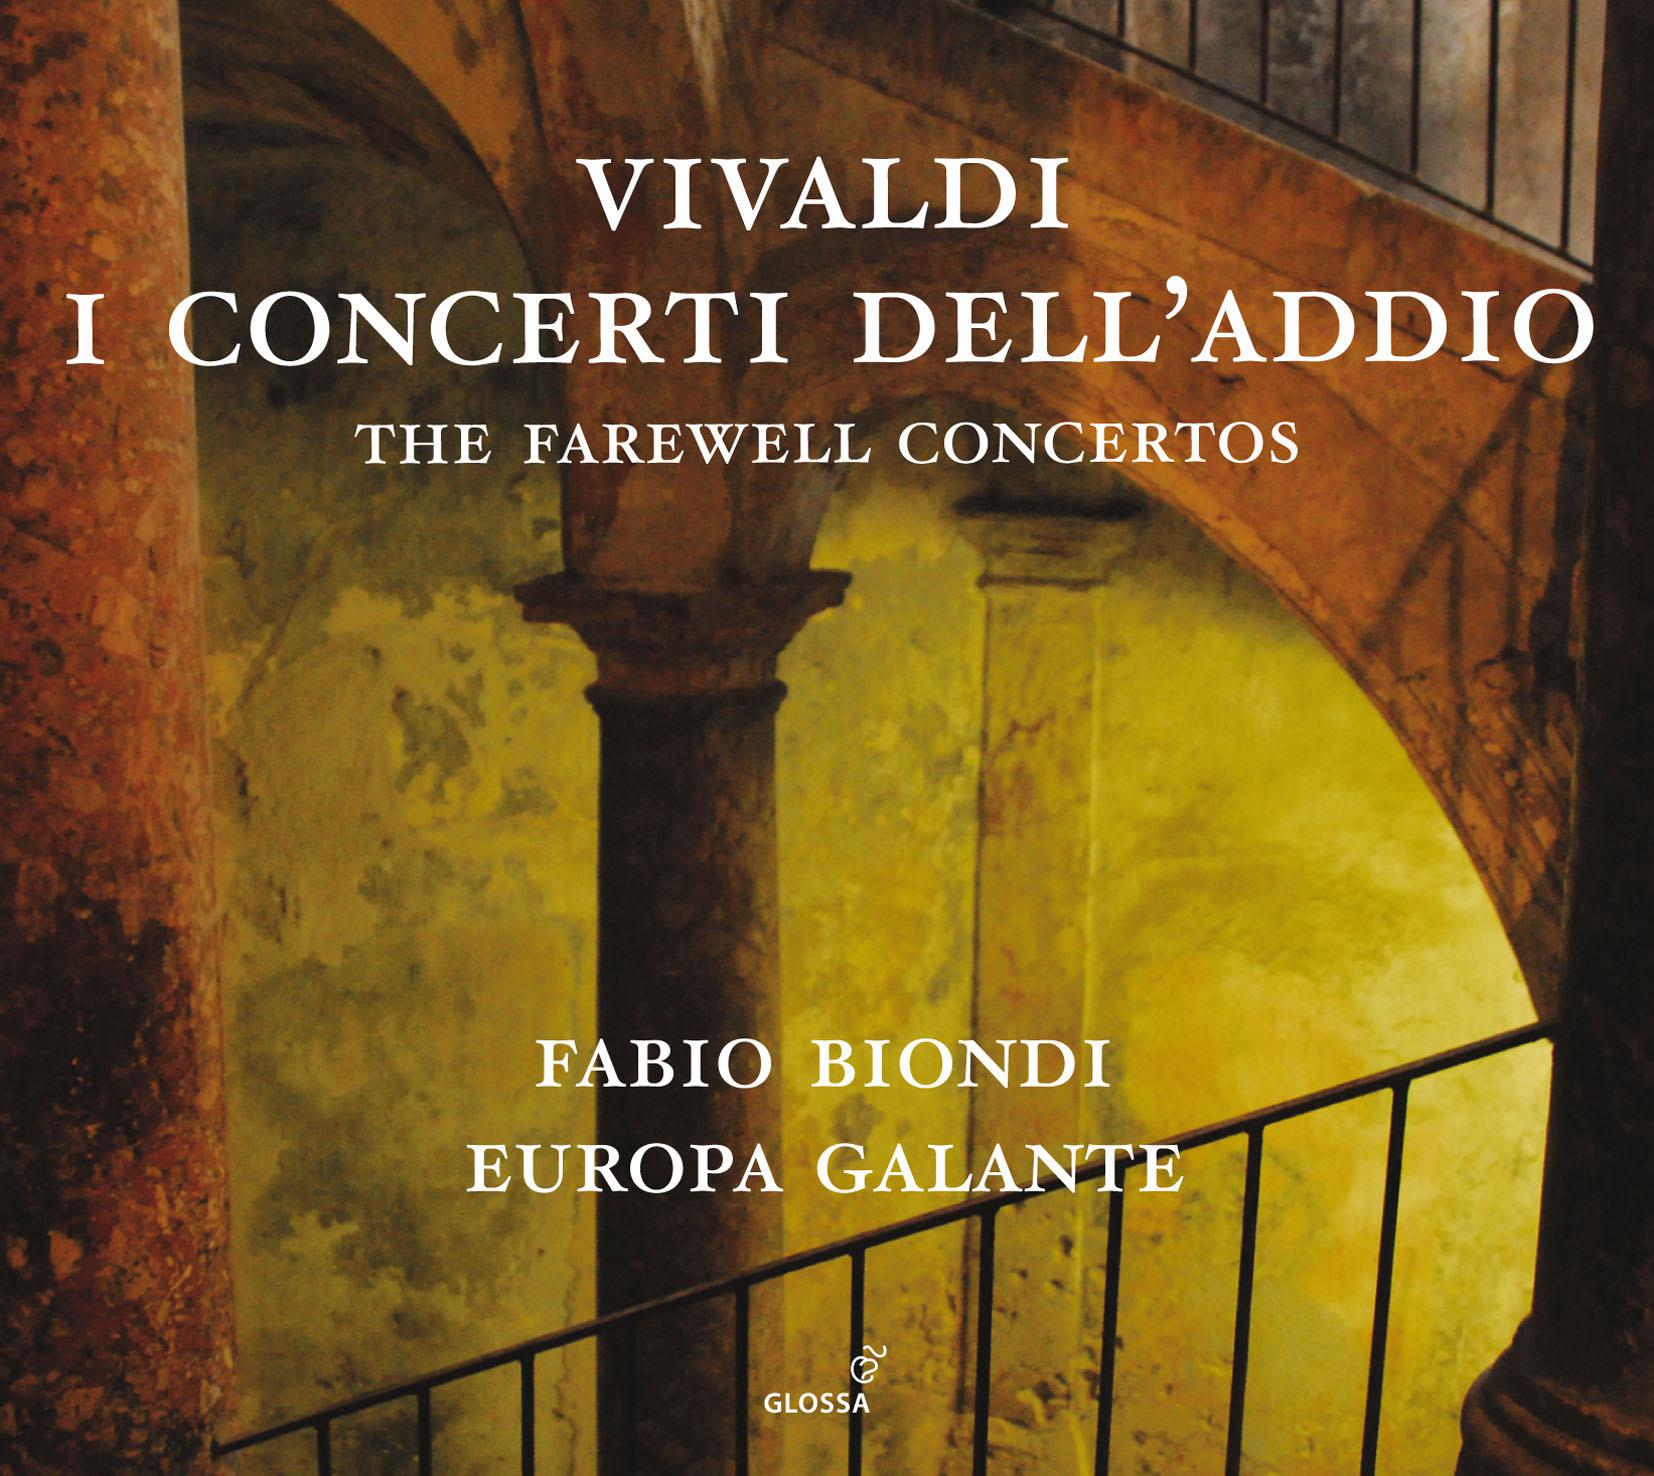 Violin Concerto in C Major, RV 189: II. Larghetto